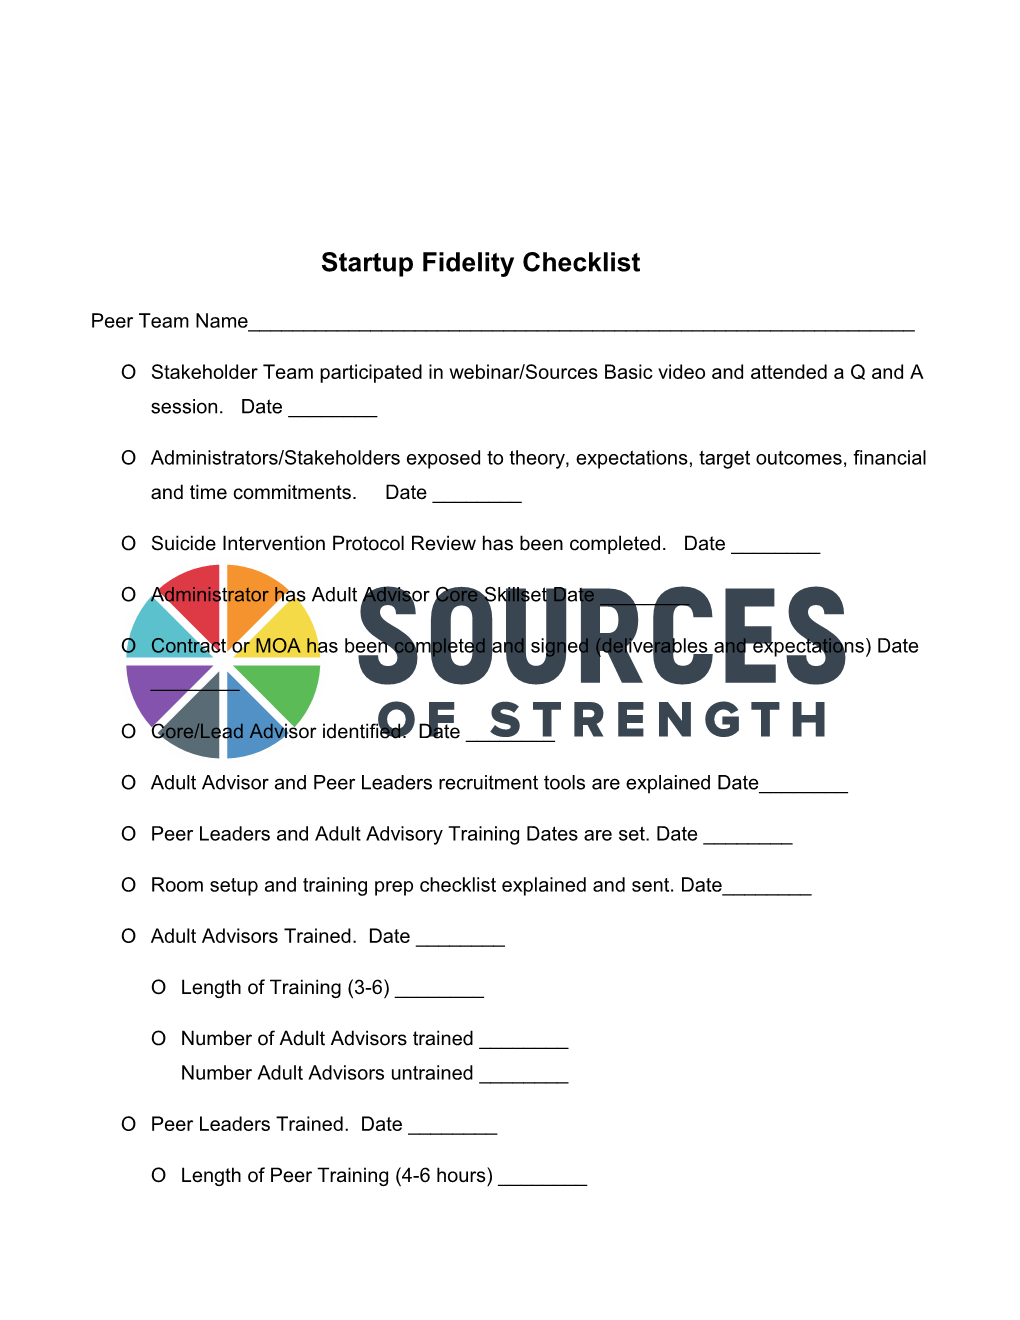 Startup Fidelity Checklist